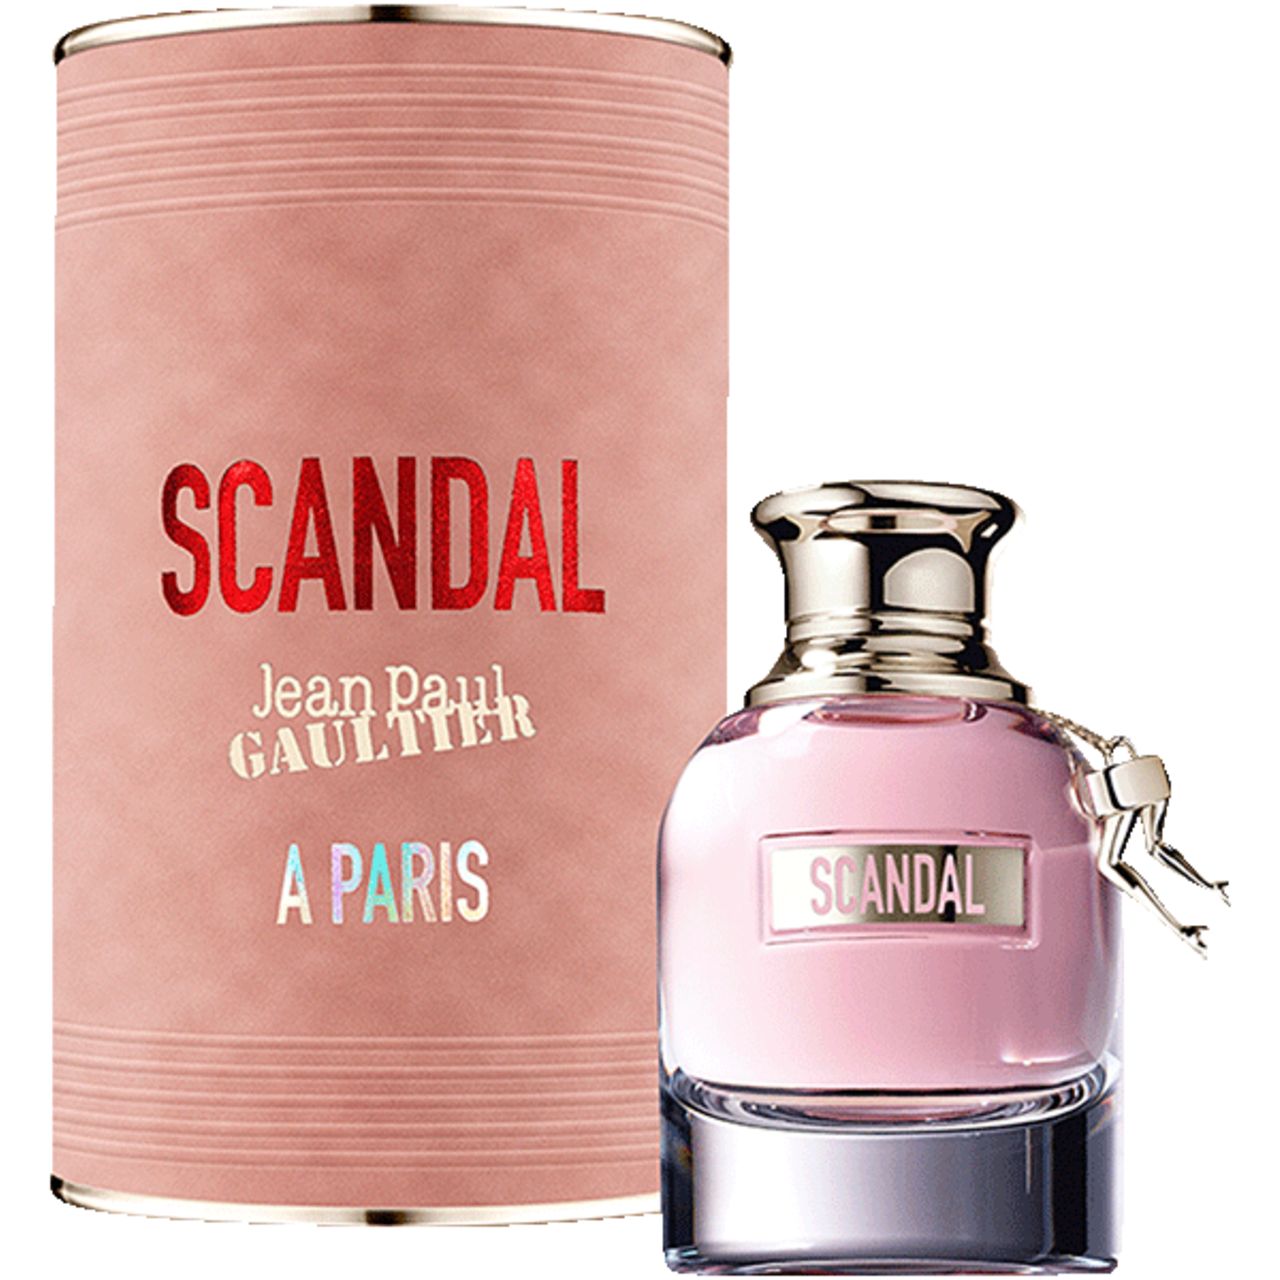 Jean Paul Gaultier, Scandal A Paris E.d.T. Nat. Spray